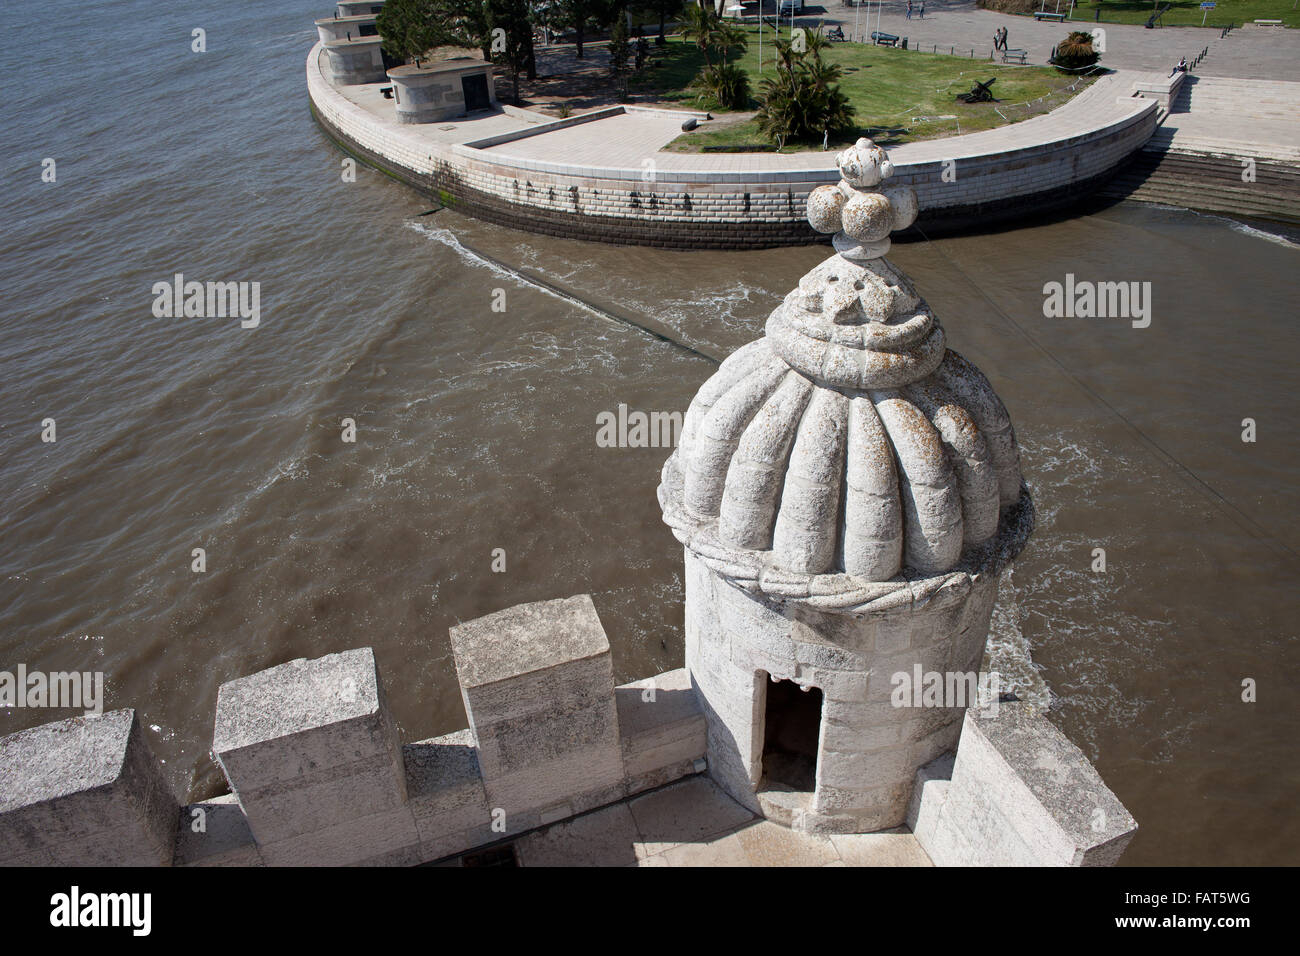 La Torre di Belem (la Torre de Belem) fortificazione merlata garitta con torretta, waterfront promenade lungo il Tago (TEJO) river Foto Stock